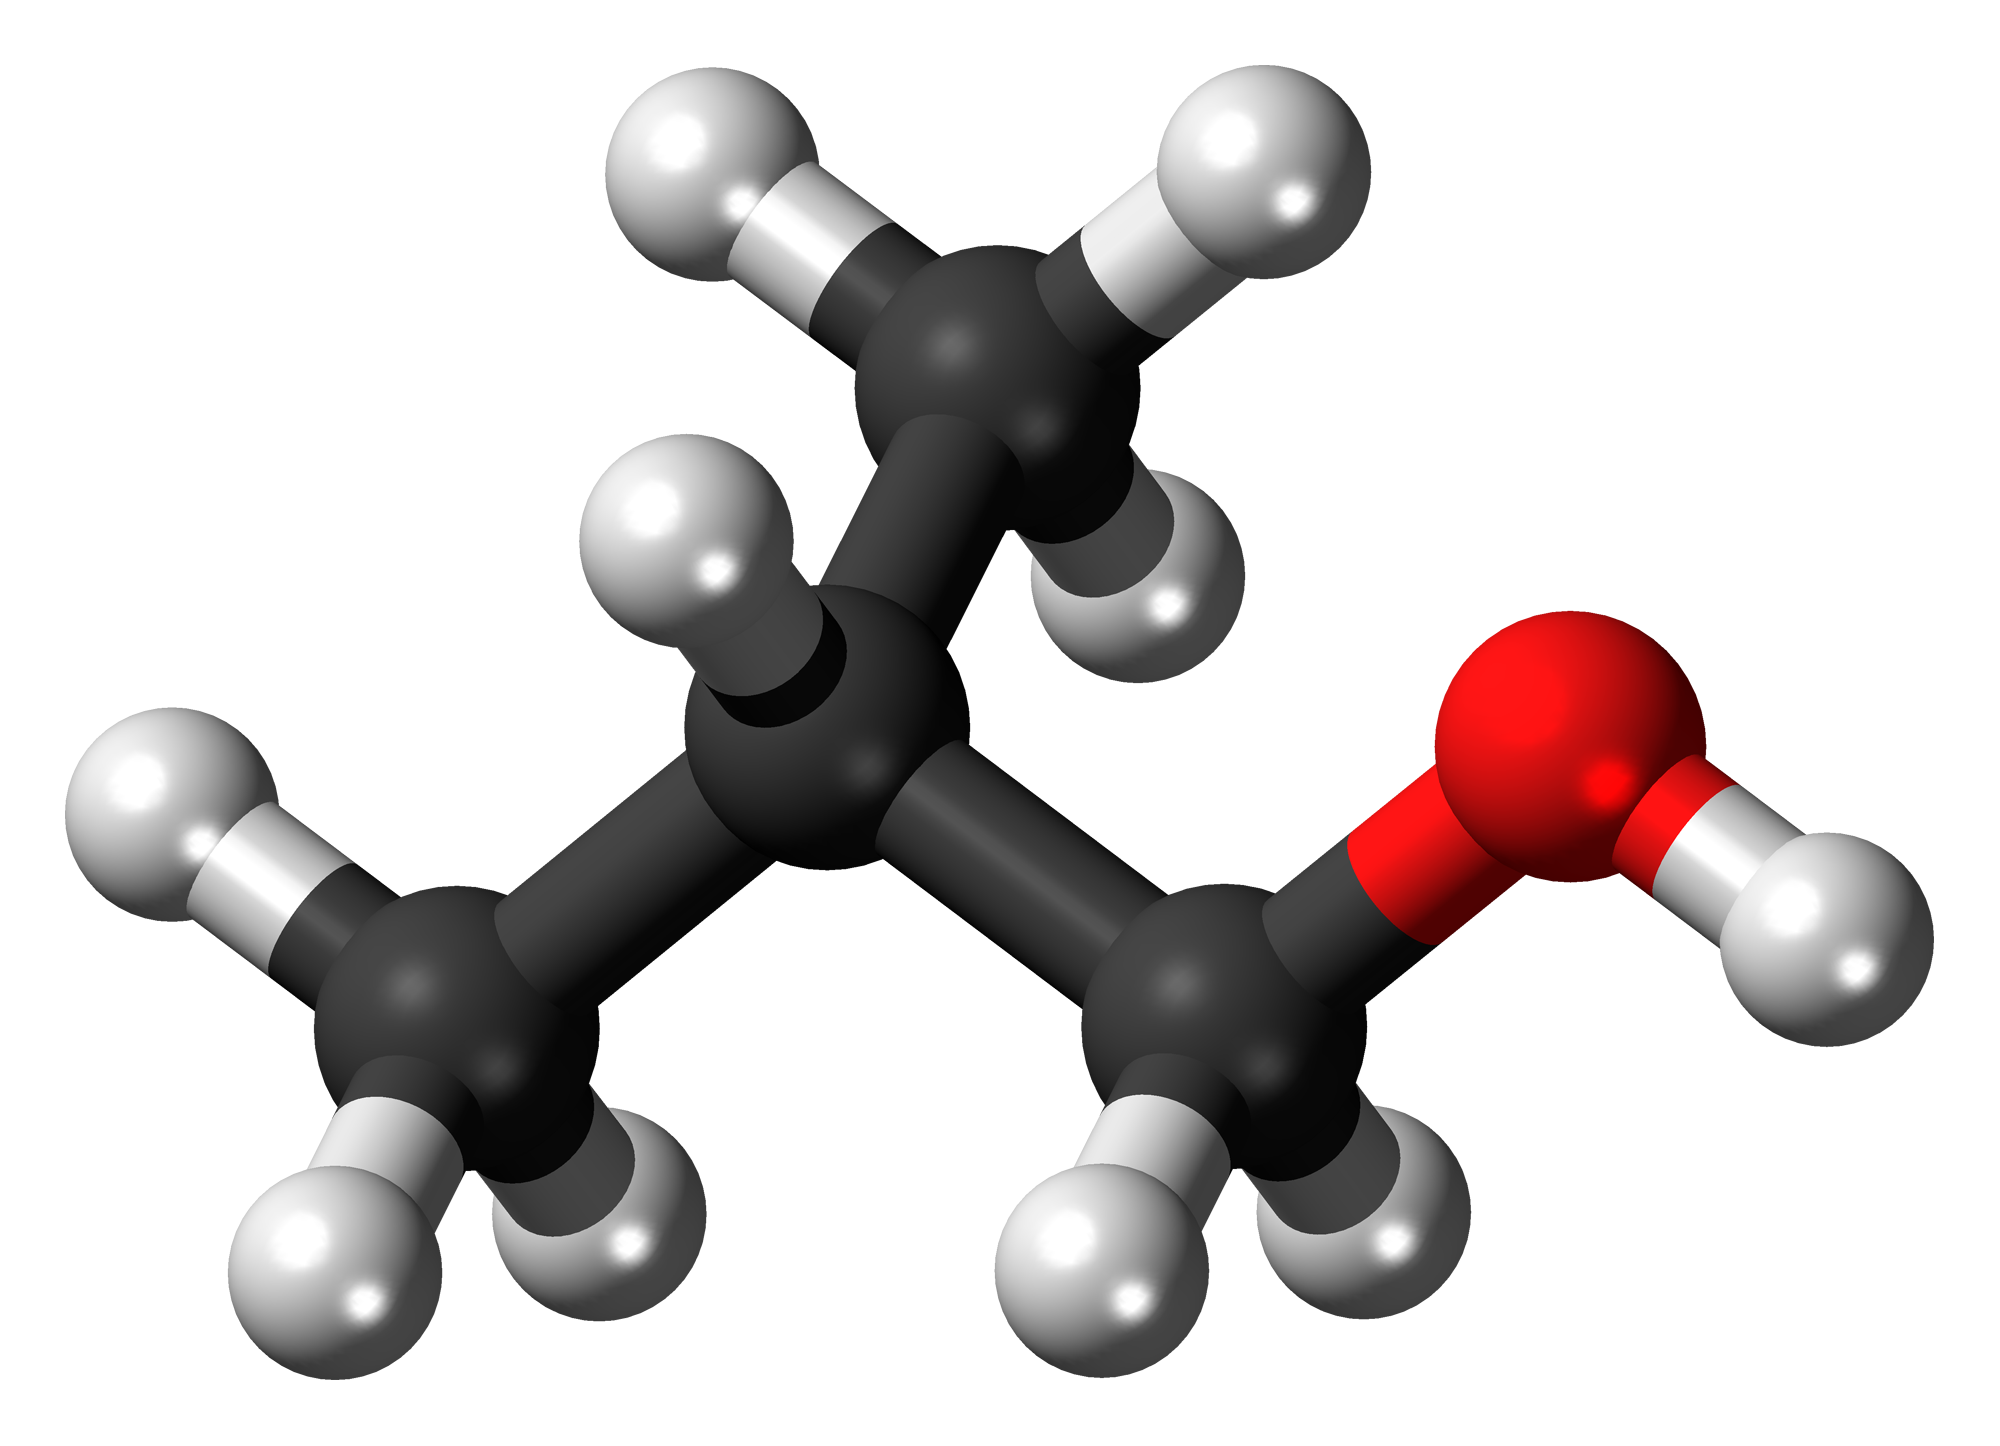  فرمول شیمیایی ایزوبوتانول